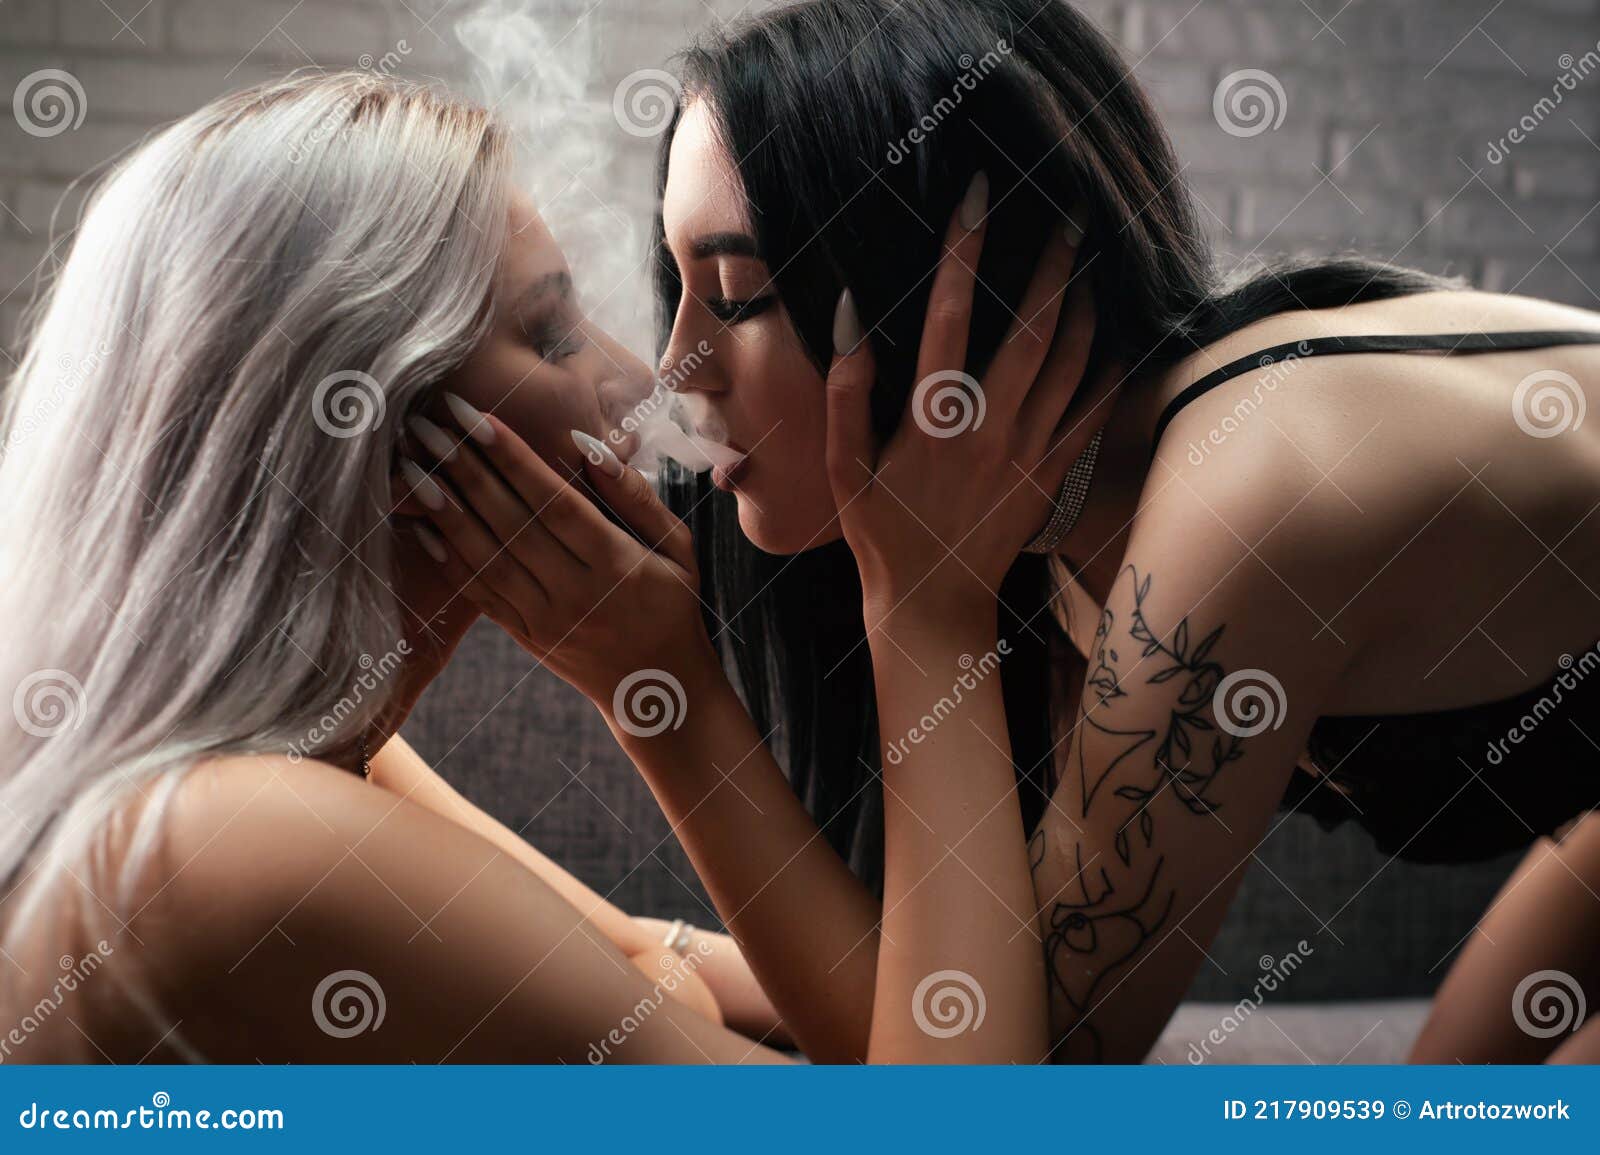 считается ли изменой когда девушка с девушкой целуются фото 59